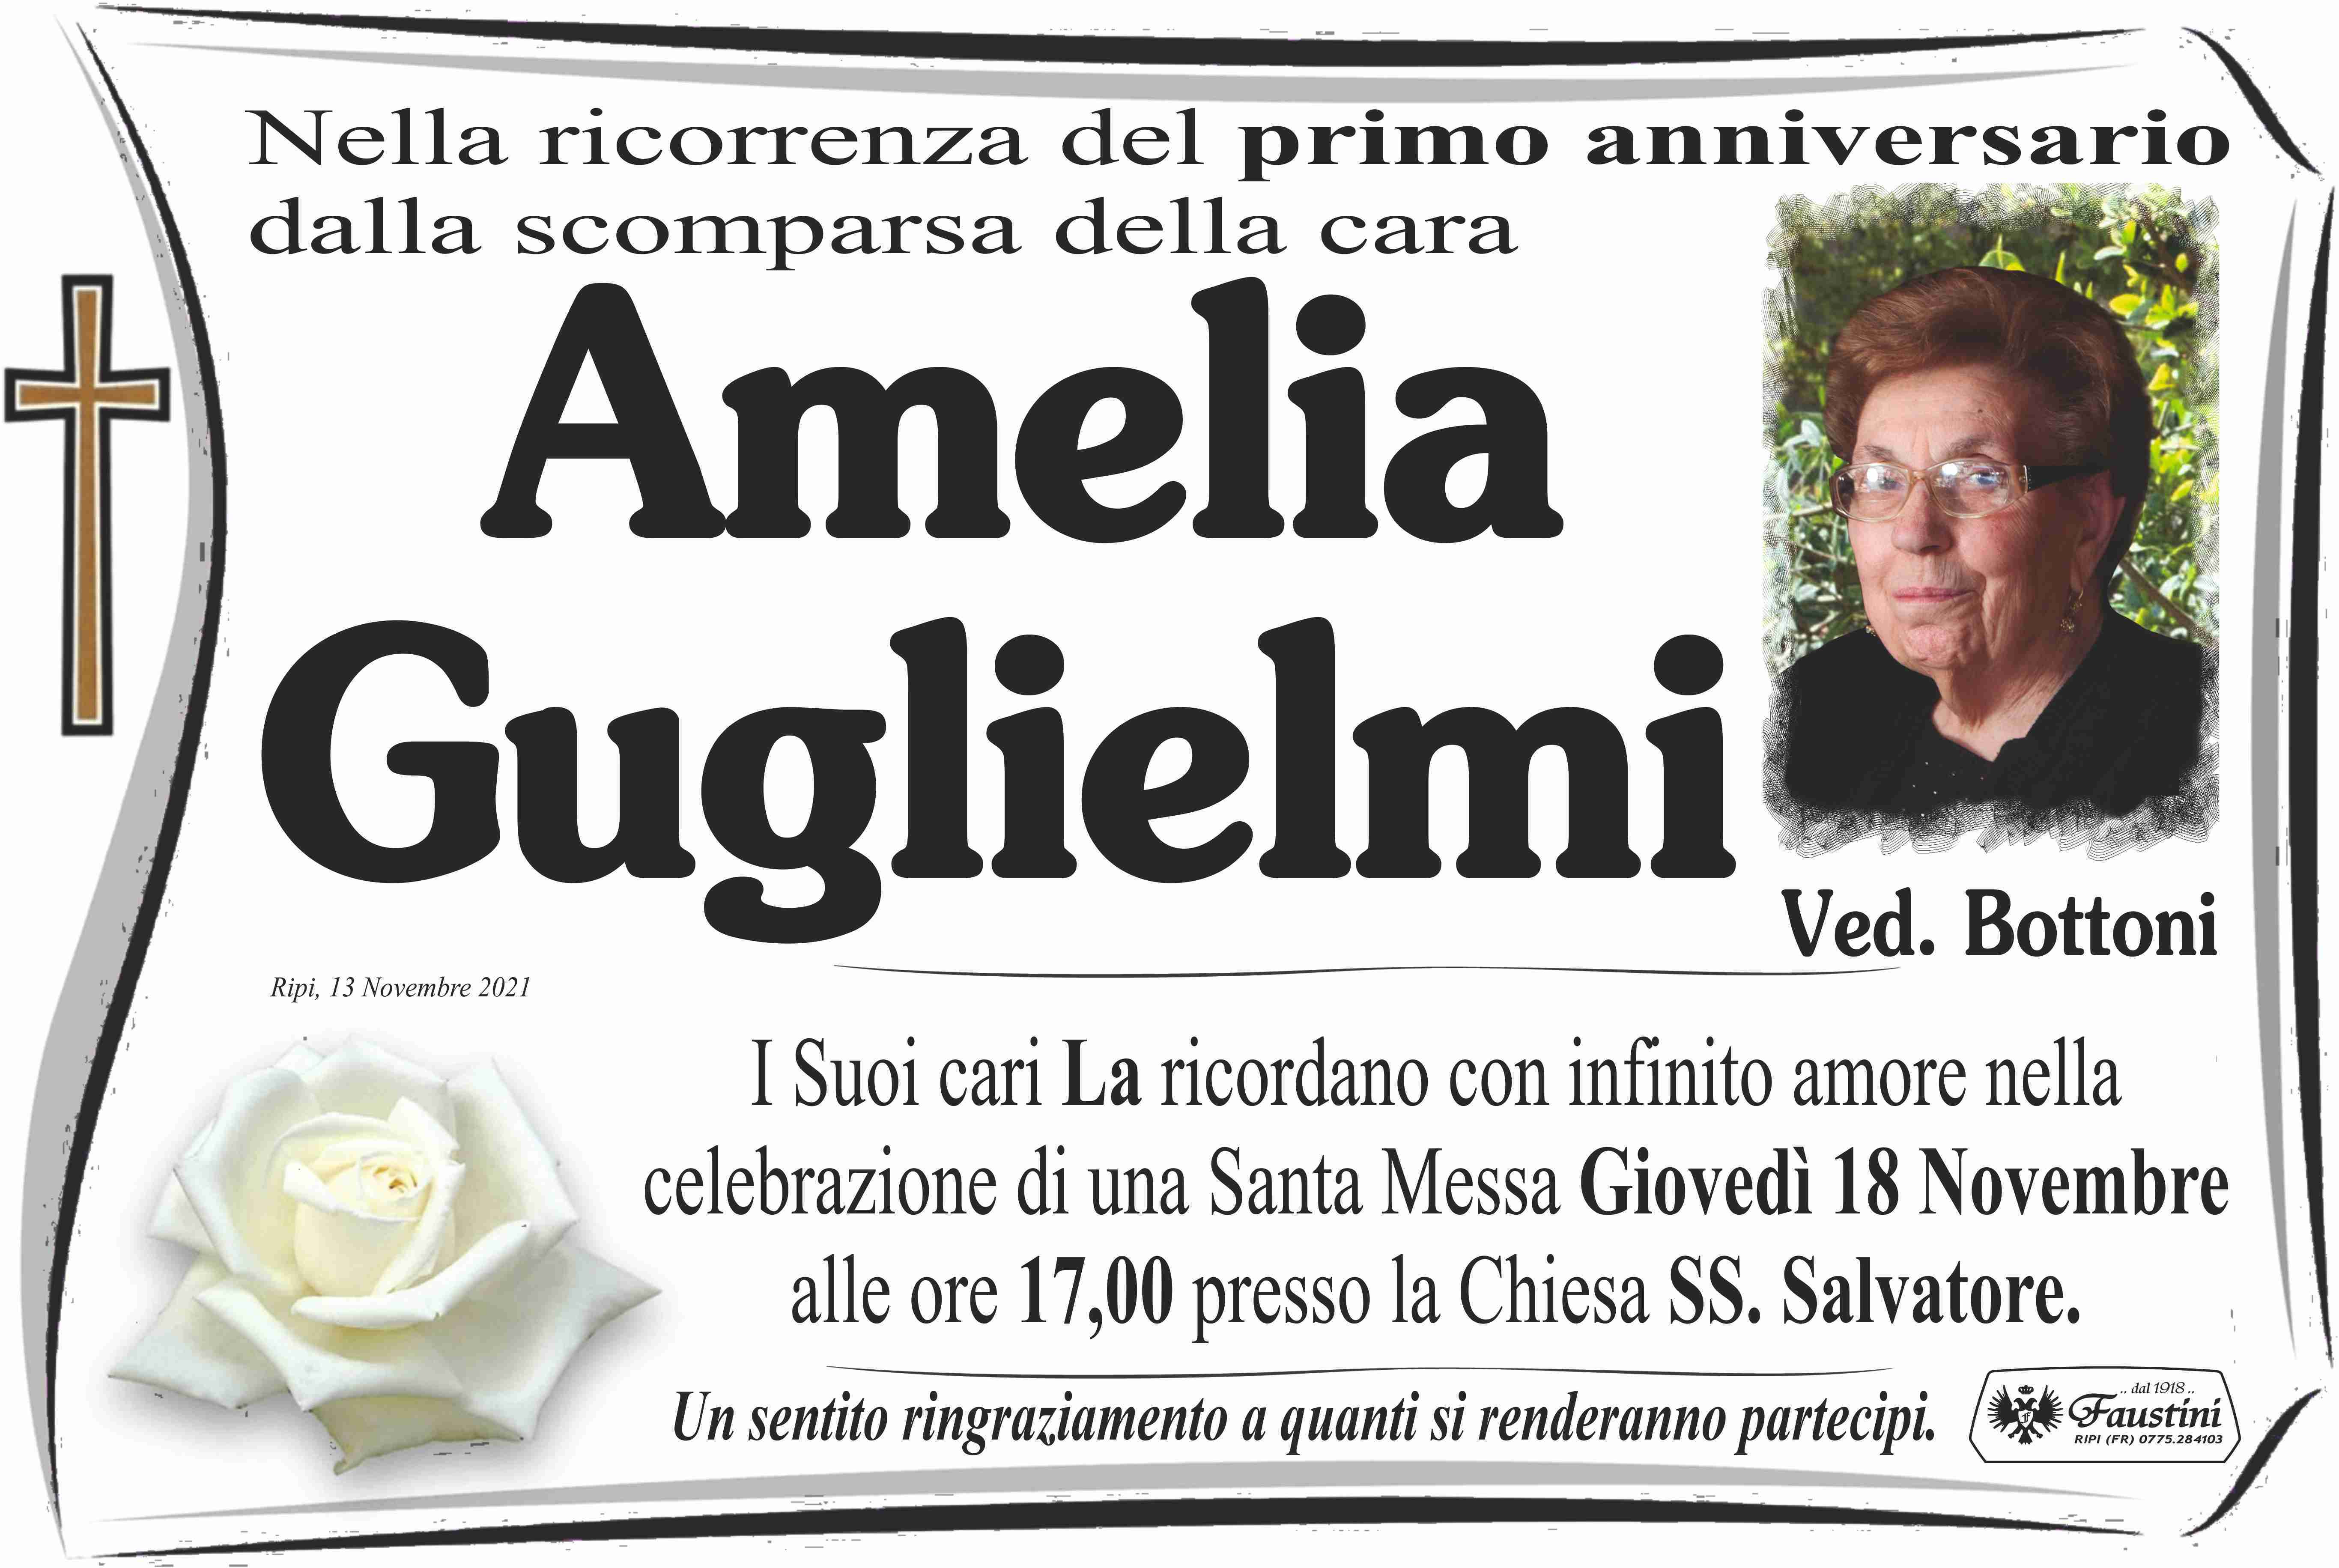 Amelia Guglielmi